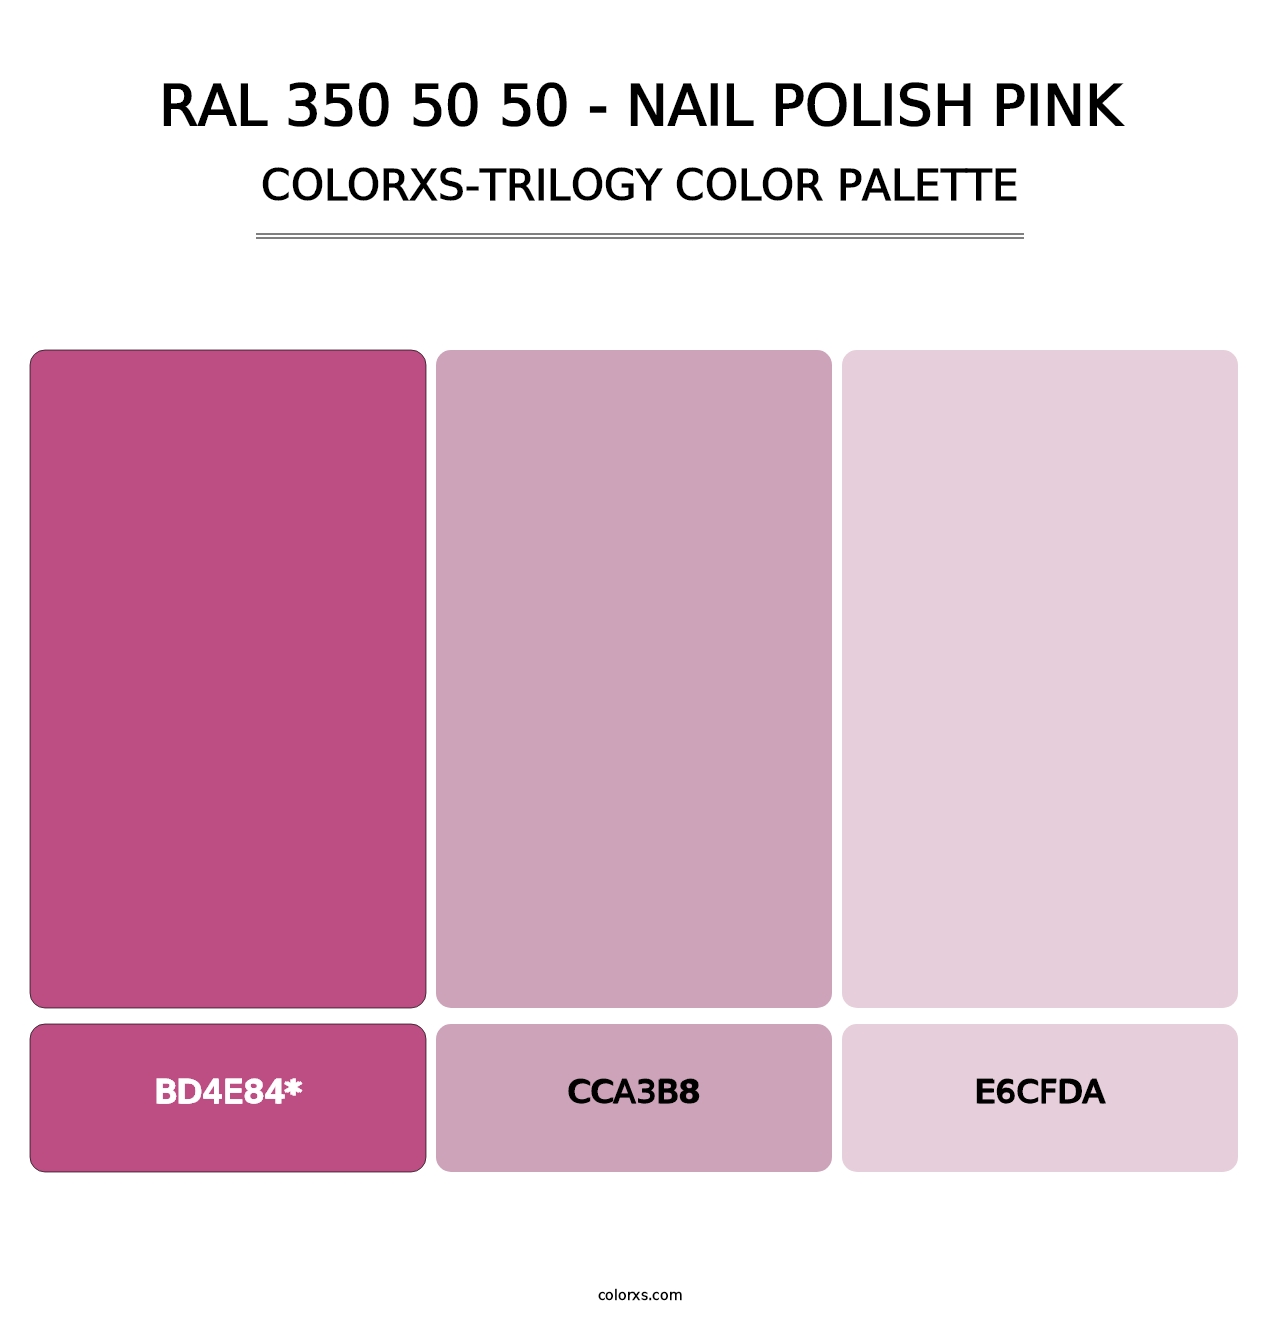 RAL 350 50 50 - Nail Polish Pink - Colorxs Trilogy Palette